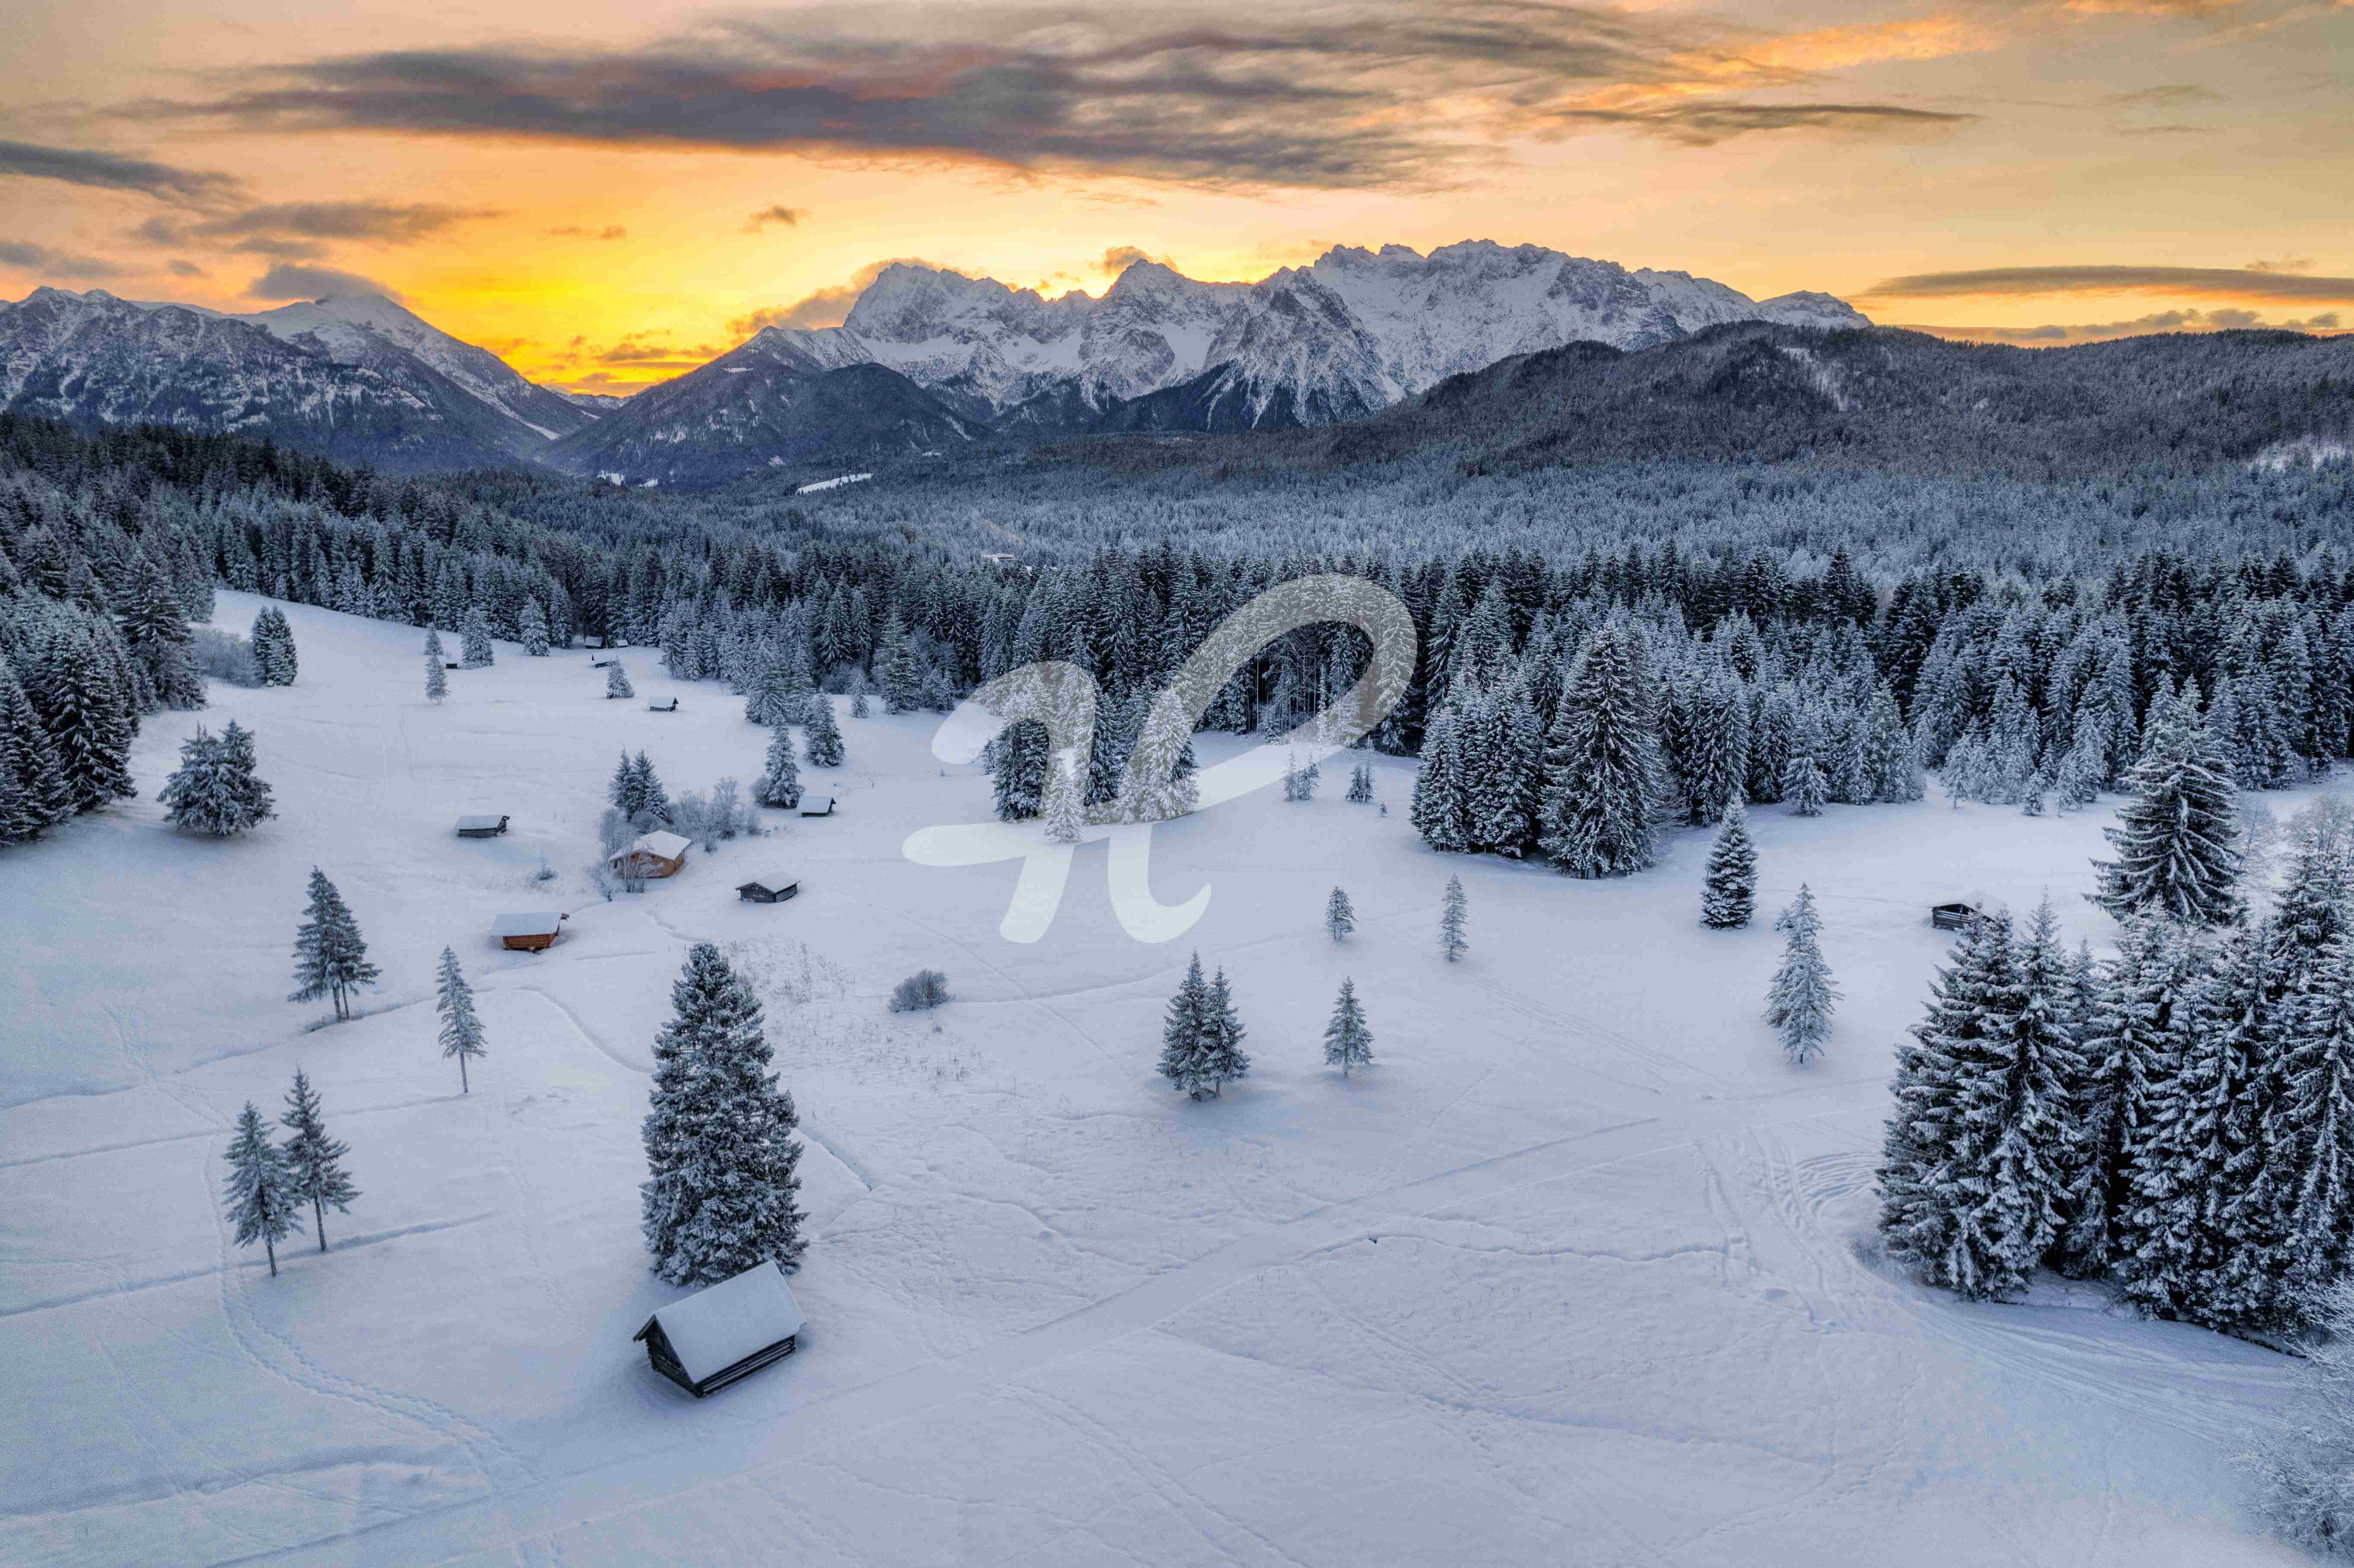 Kleine hütten in einer winterlichen Landschaft umgeben von Bergen in Bayern